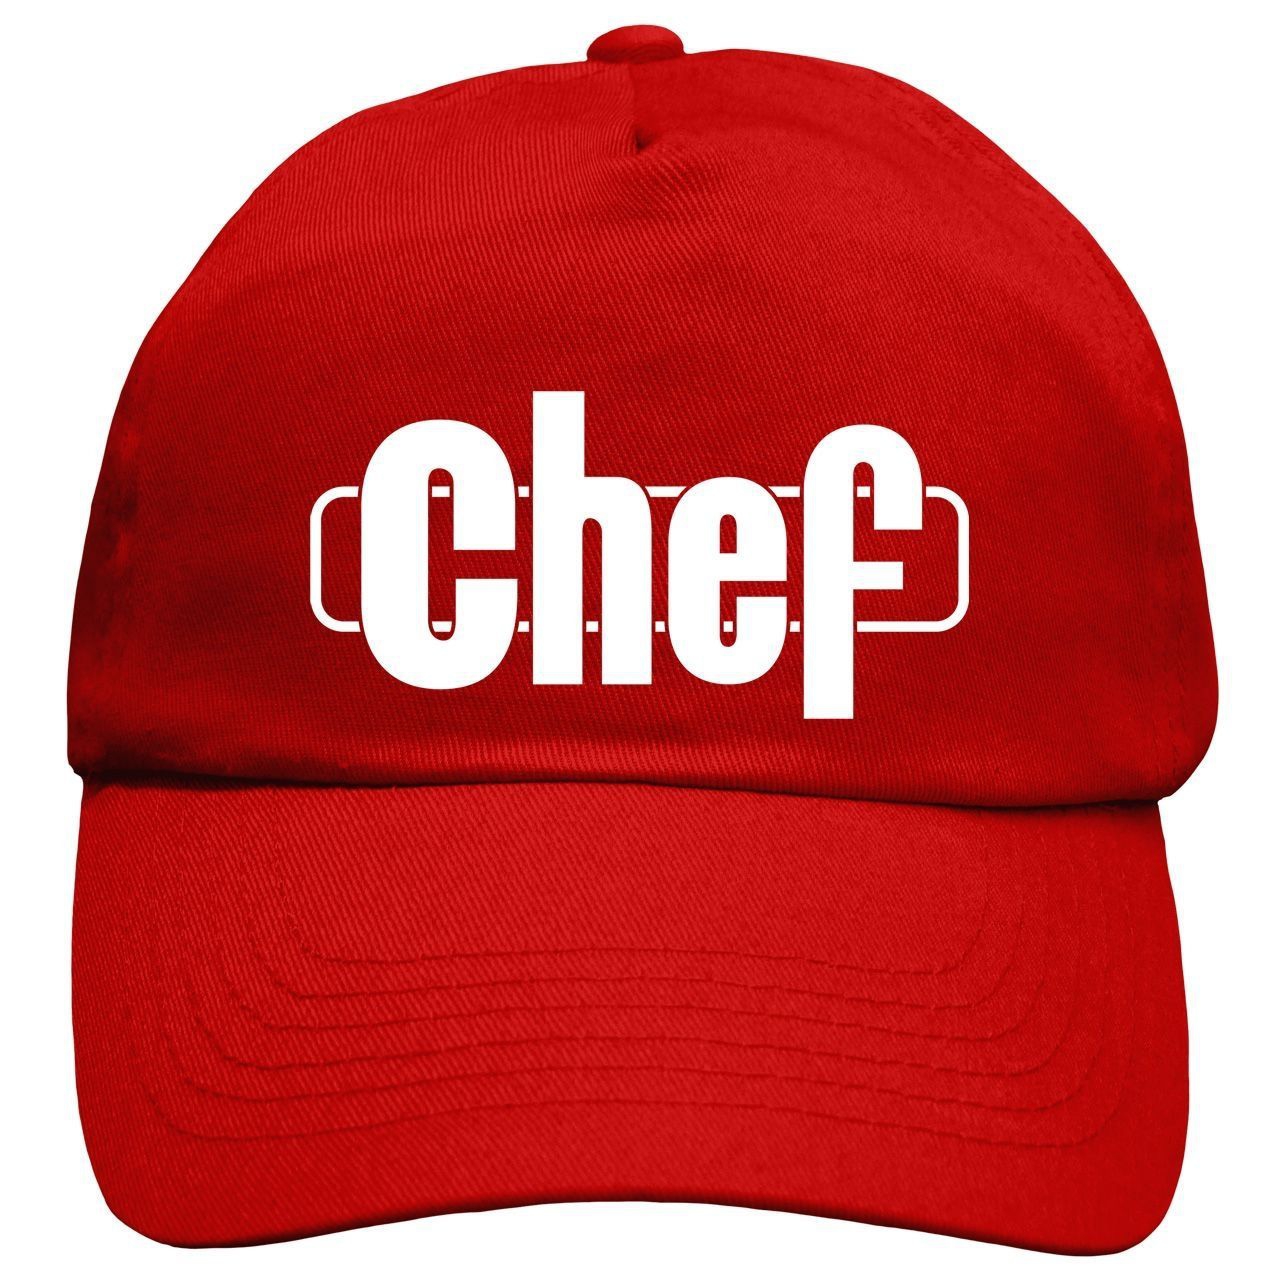 Chef Cap Rundschirm rot